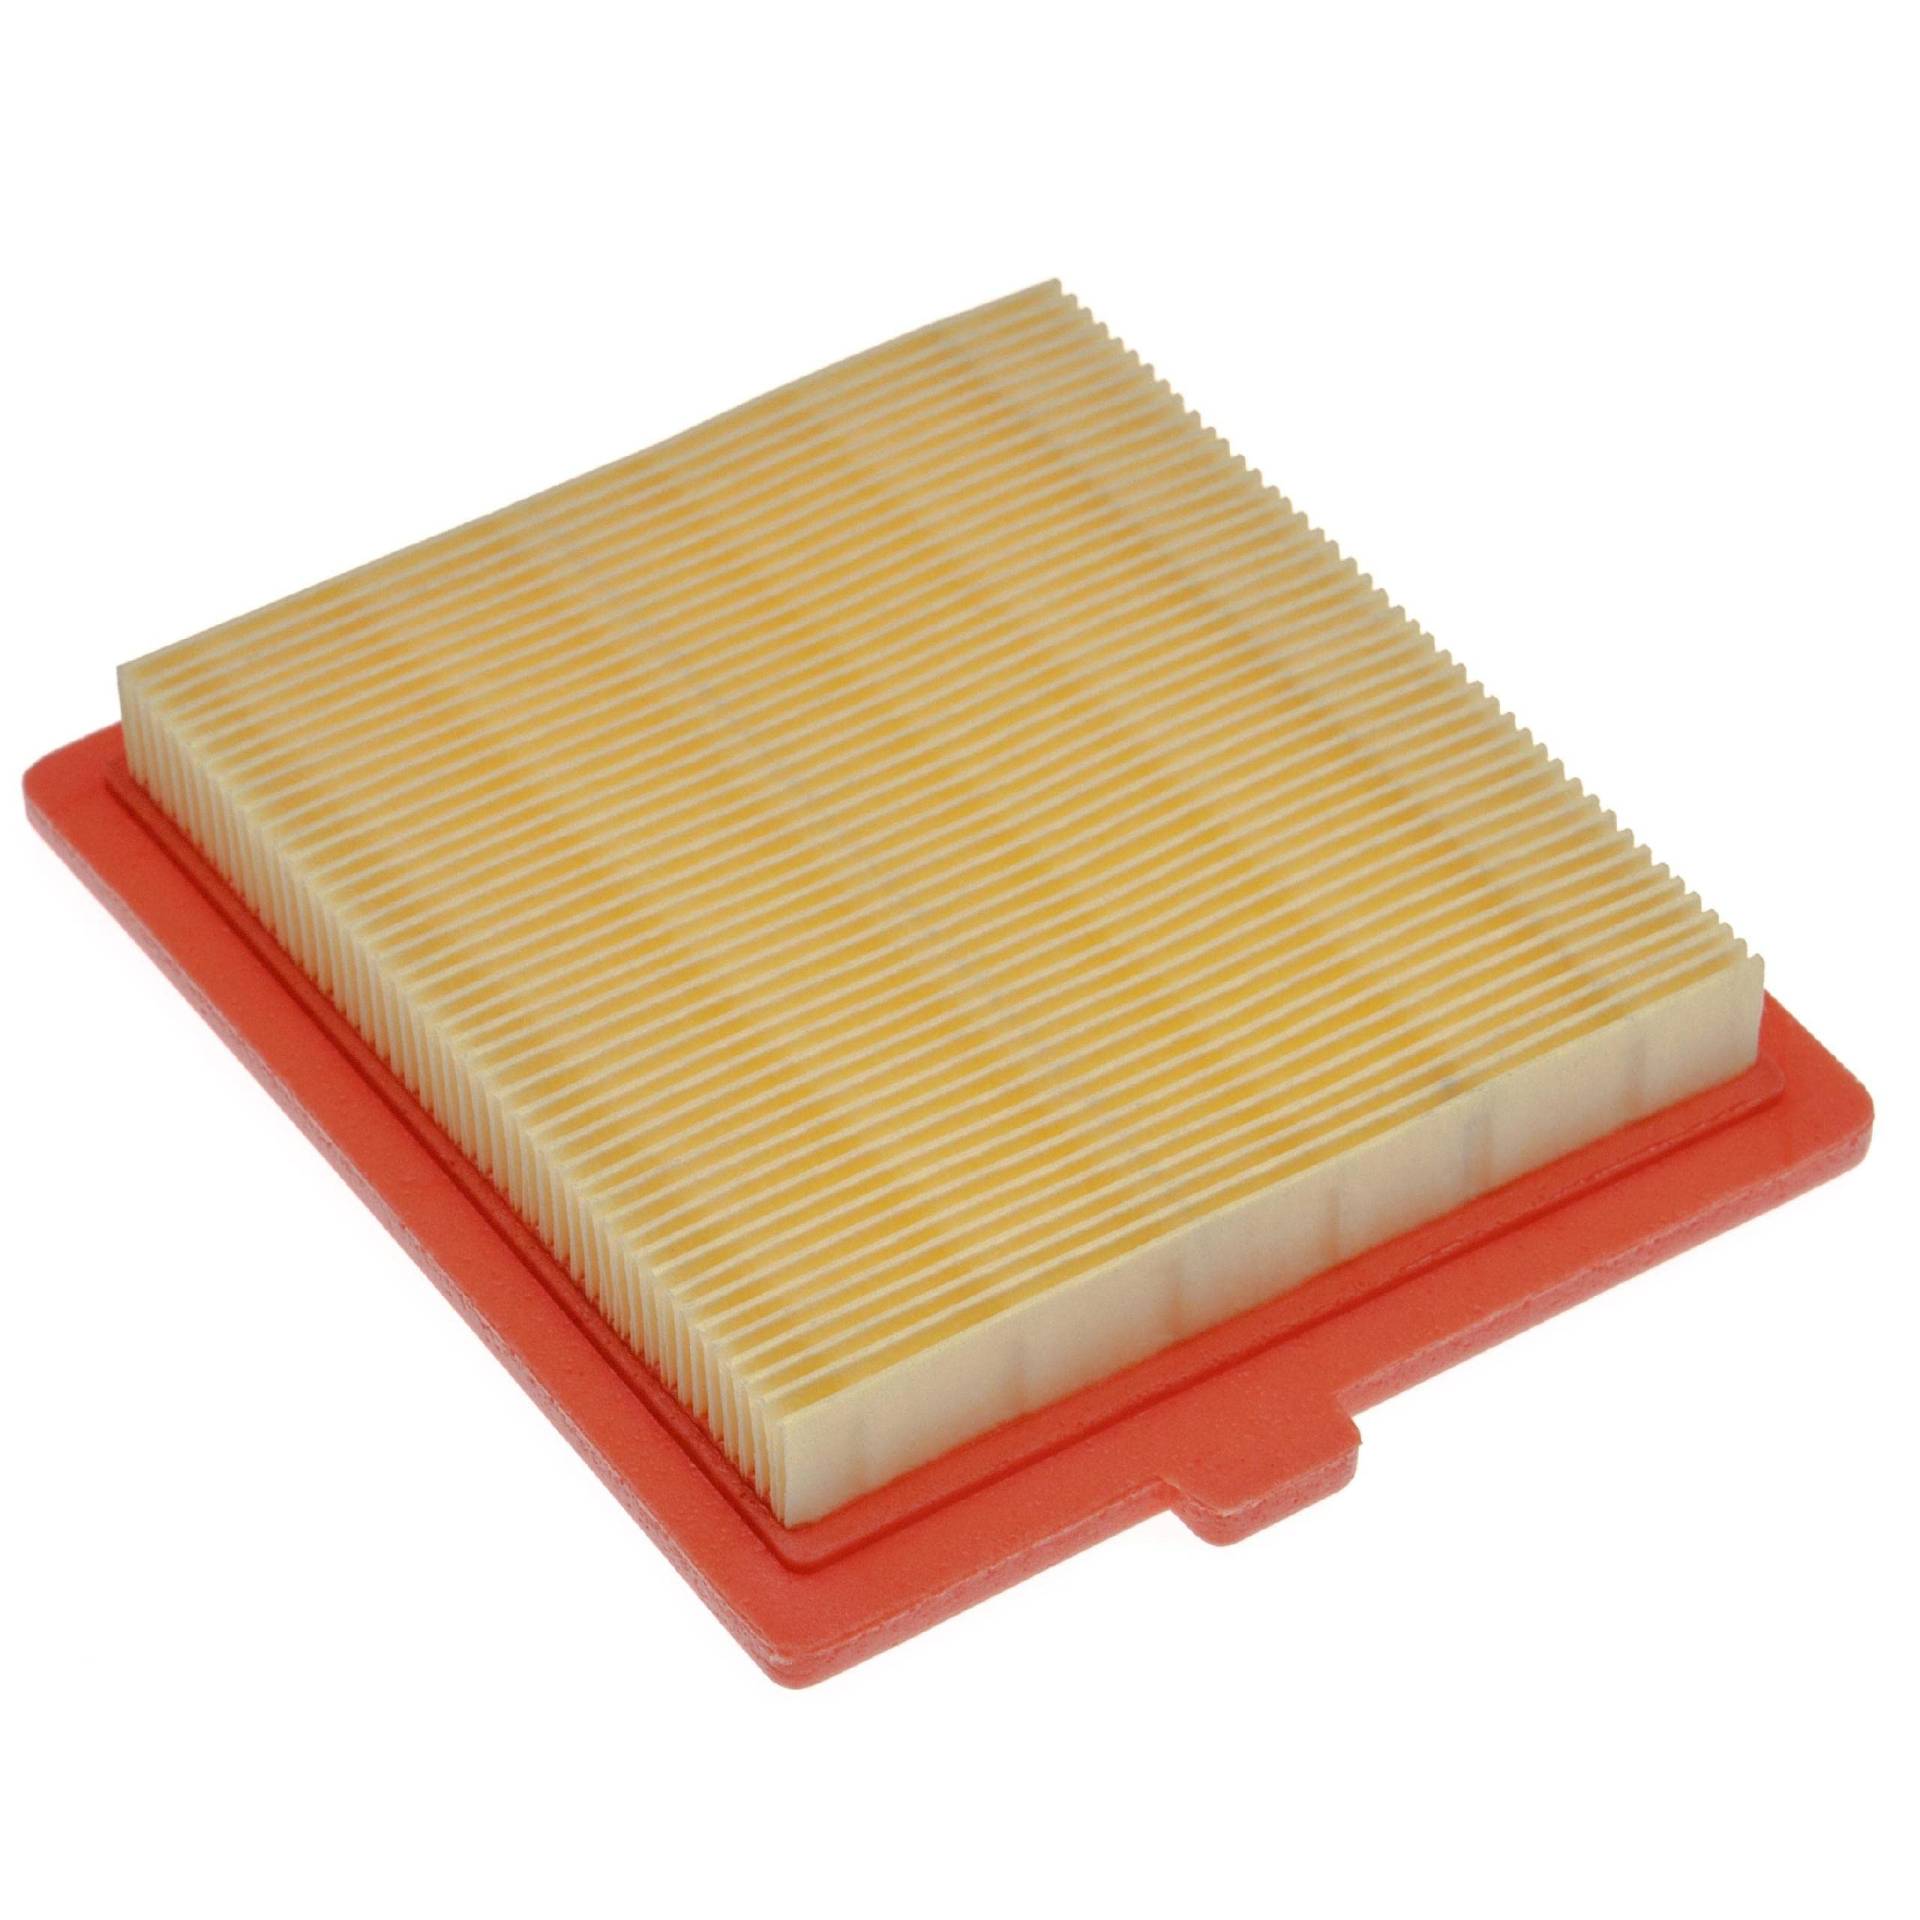 vhbw Ersatzfilter (1x Luftfilter) kompatibel mit Castelgarden/GGP/STIGA OM45, REM50 Rasenmäher, 12,2 x 10,8 x 2 cm, Gelb, Orange von vhbw